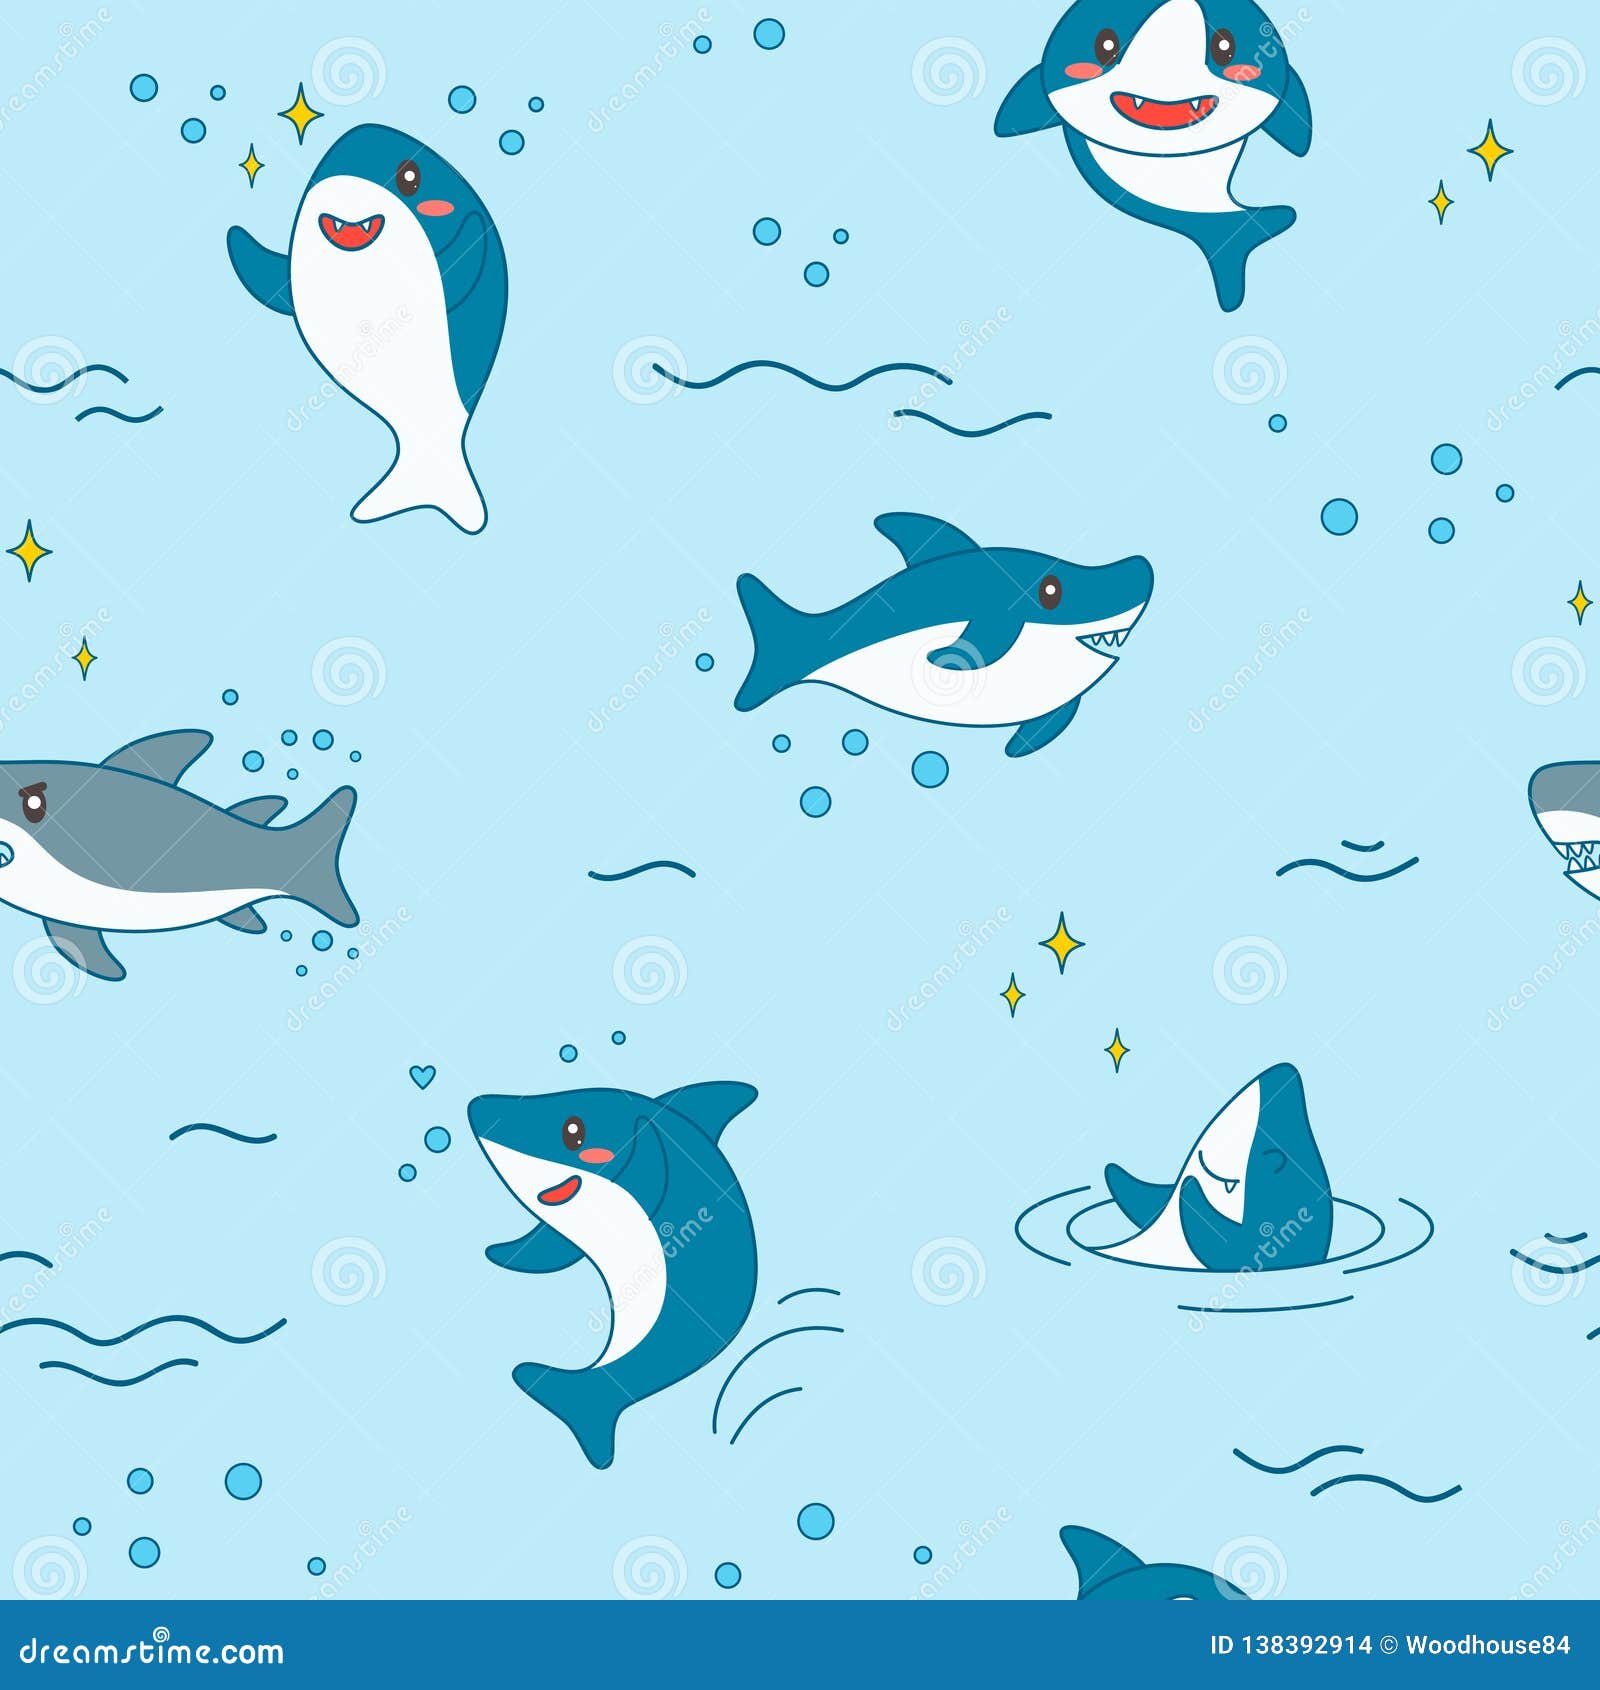 90 Cute Shark Surfing Cartoon Illustrations RoyaltyFree Vector Graphics   Clip Art  iStock